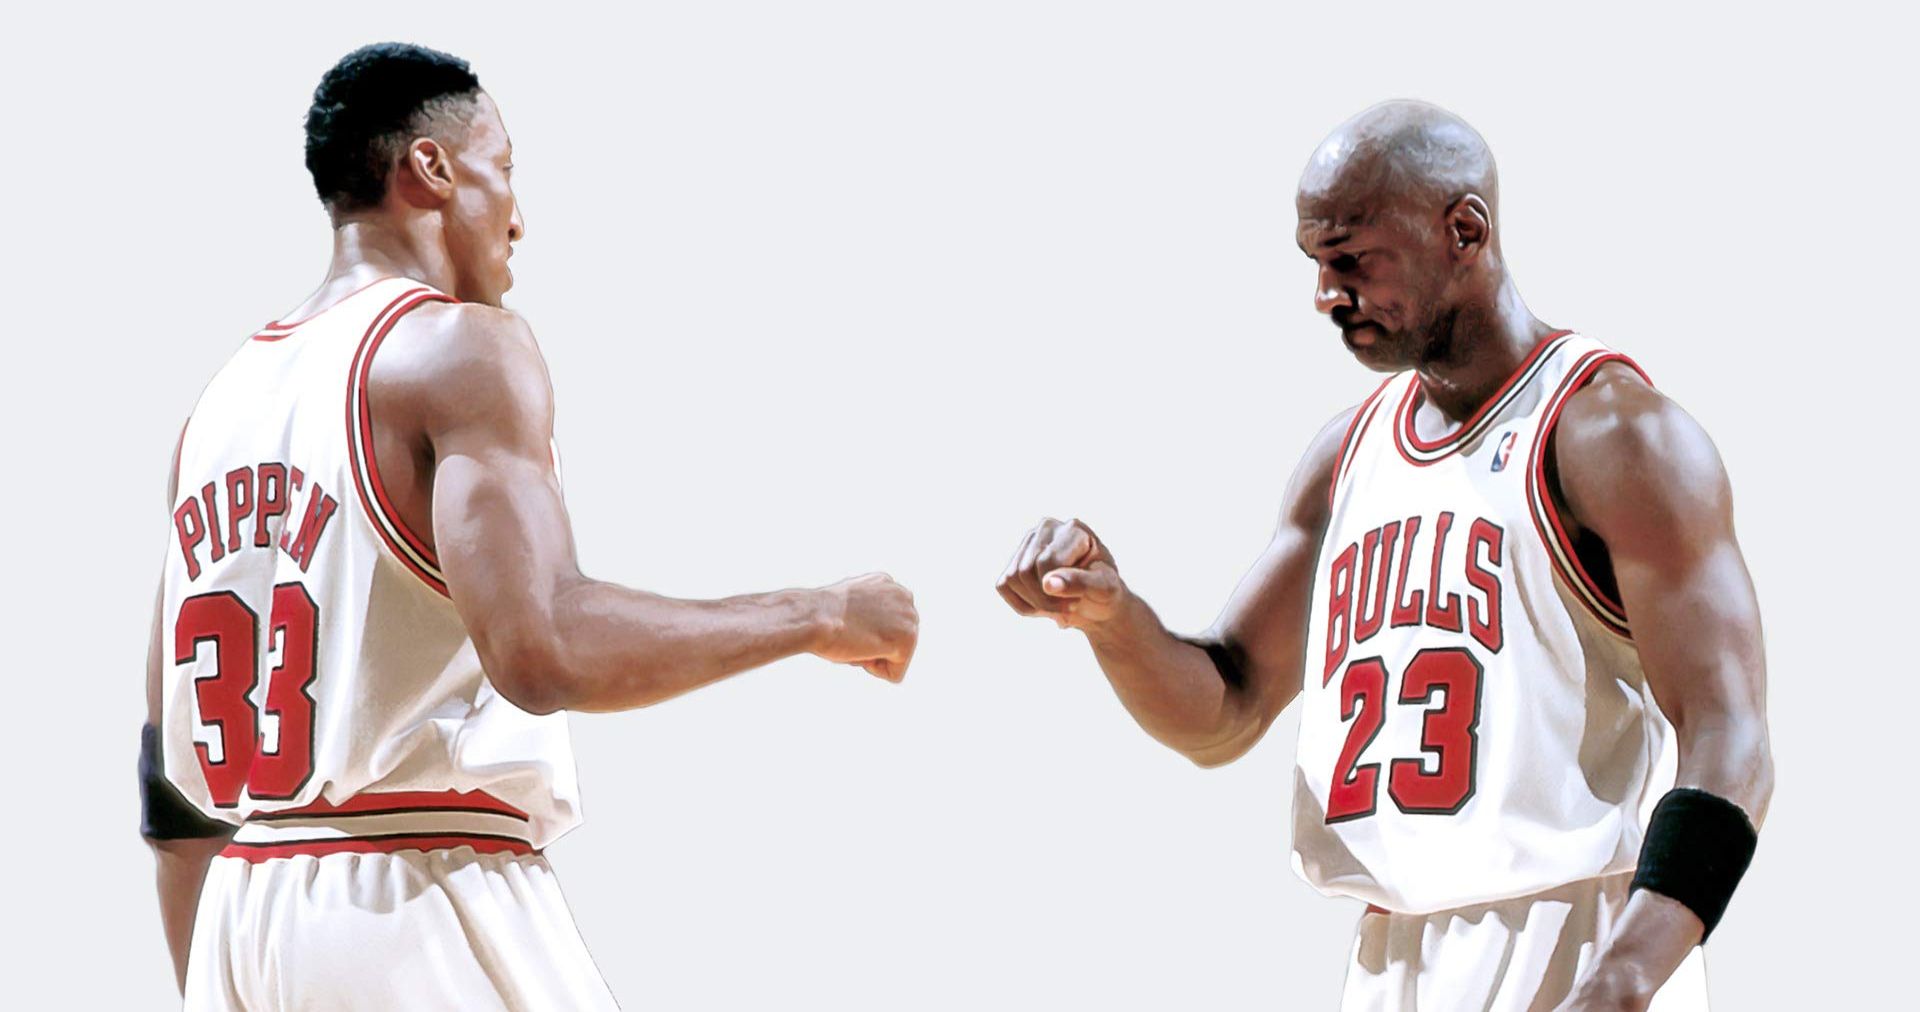 Scottie Pippen Blasts Michael Jordan Over The Last Dance